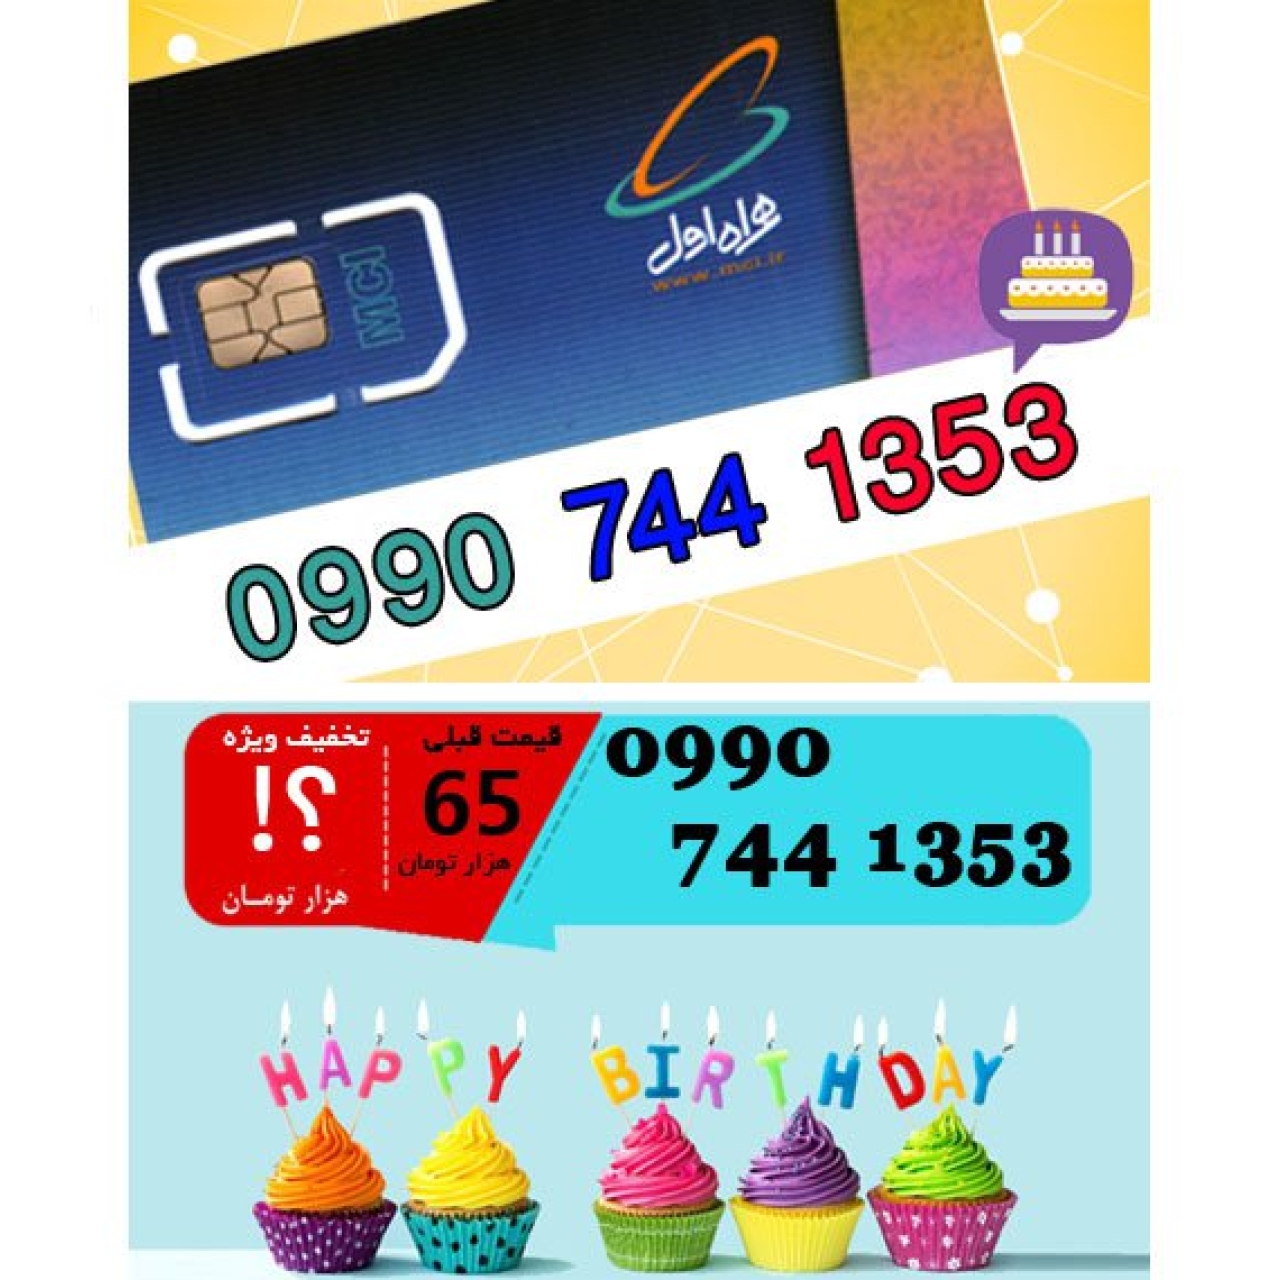 سیم کارت اعتباری همراه اول 09907441353 تاریخ تولد